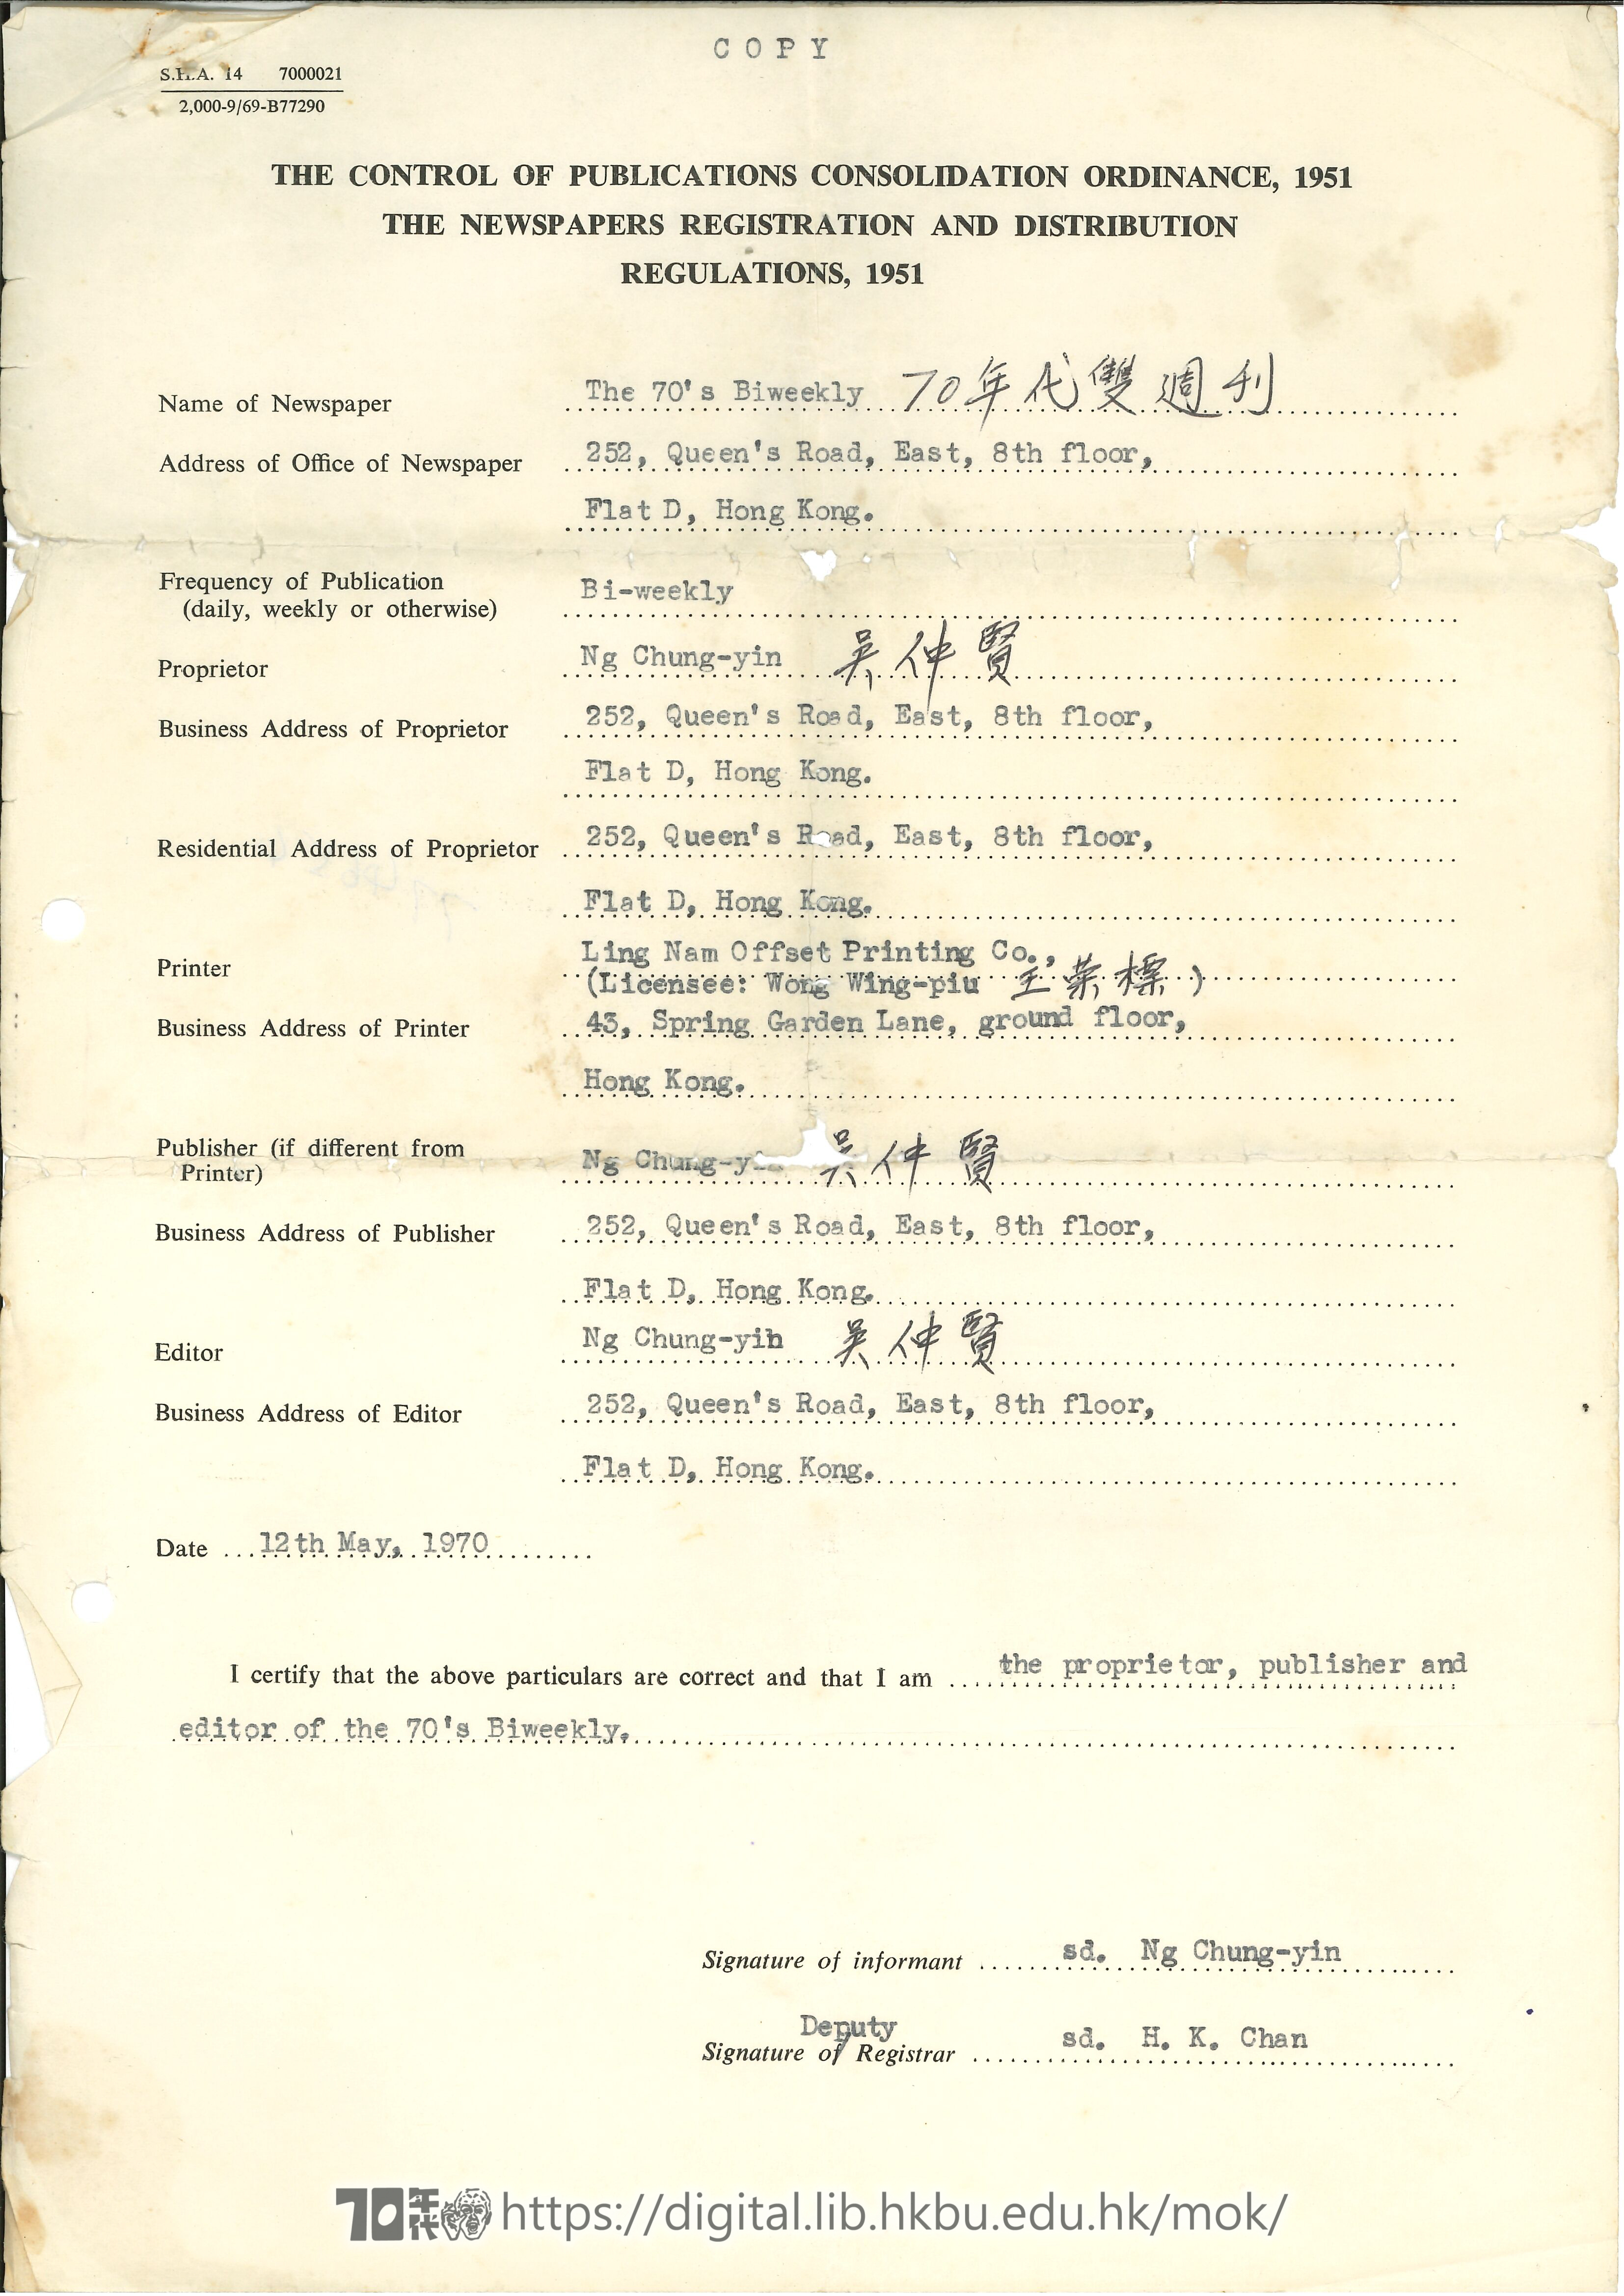   吳仲賢簽署確認70年代雙週刊註冊內容  